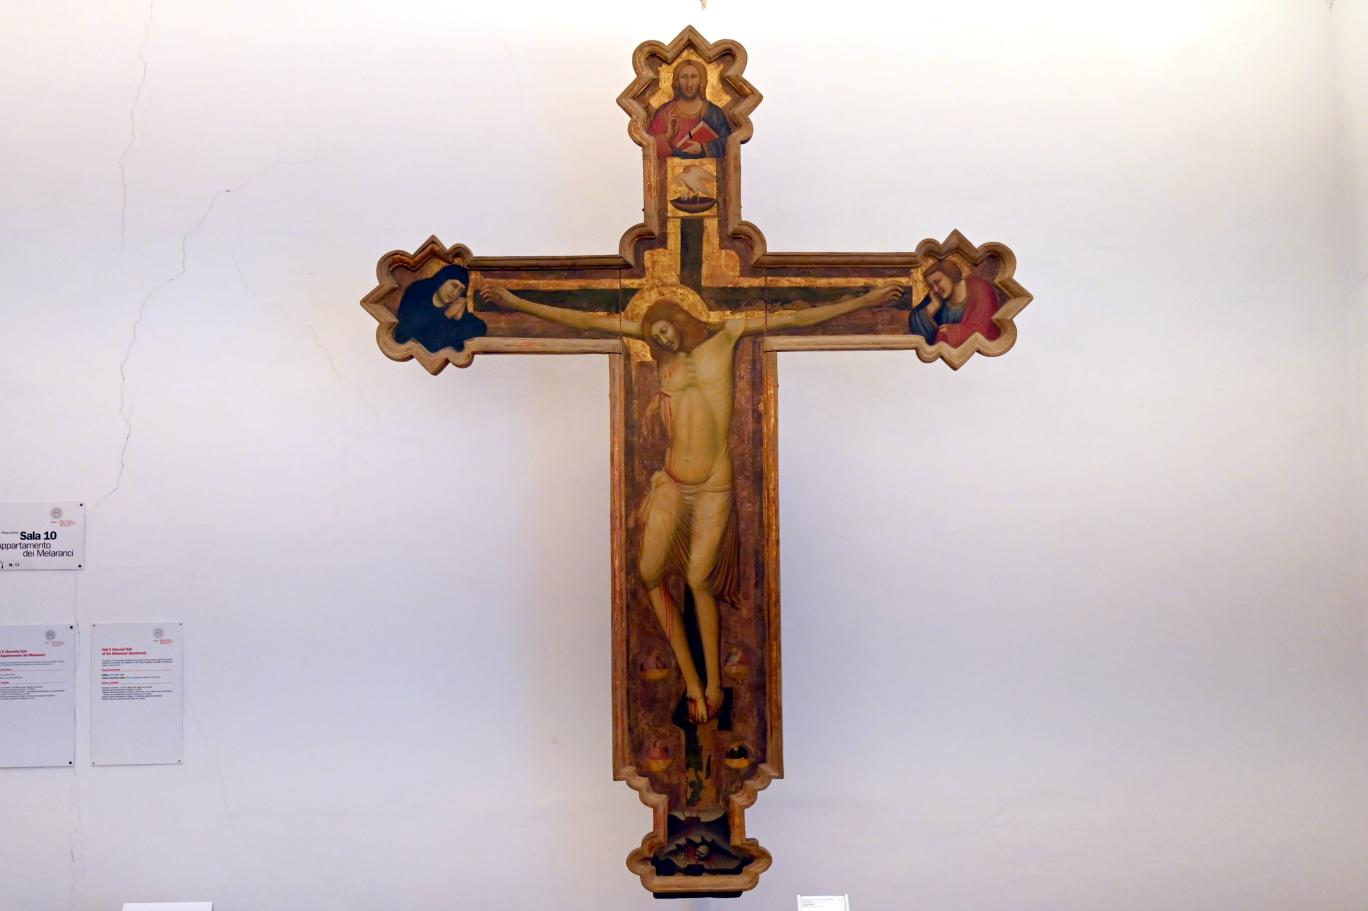 Maestro dell'Incoronazione di Urbino (1347), Kruzifixus, Urbino, Galleria Nazionale delle Marche, Saal 10, 1345–1350, Bild 1/2